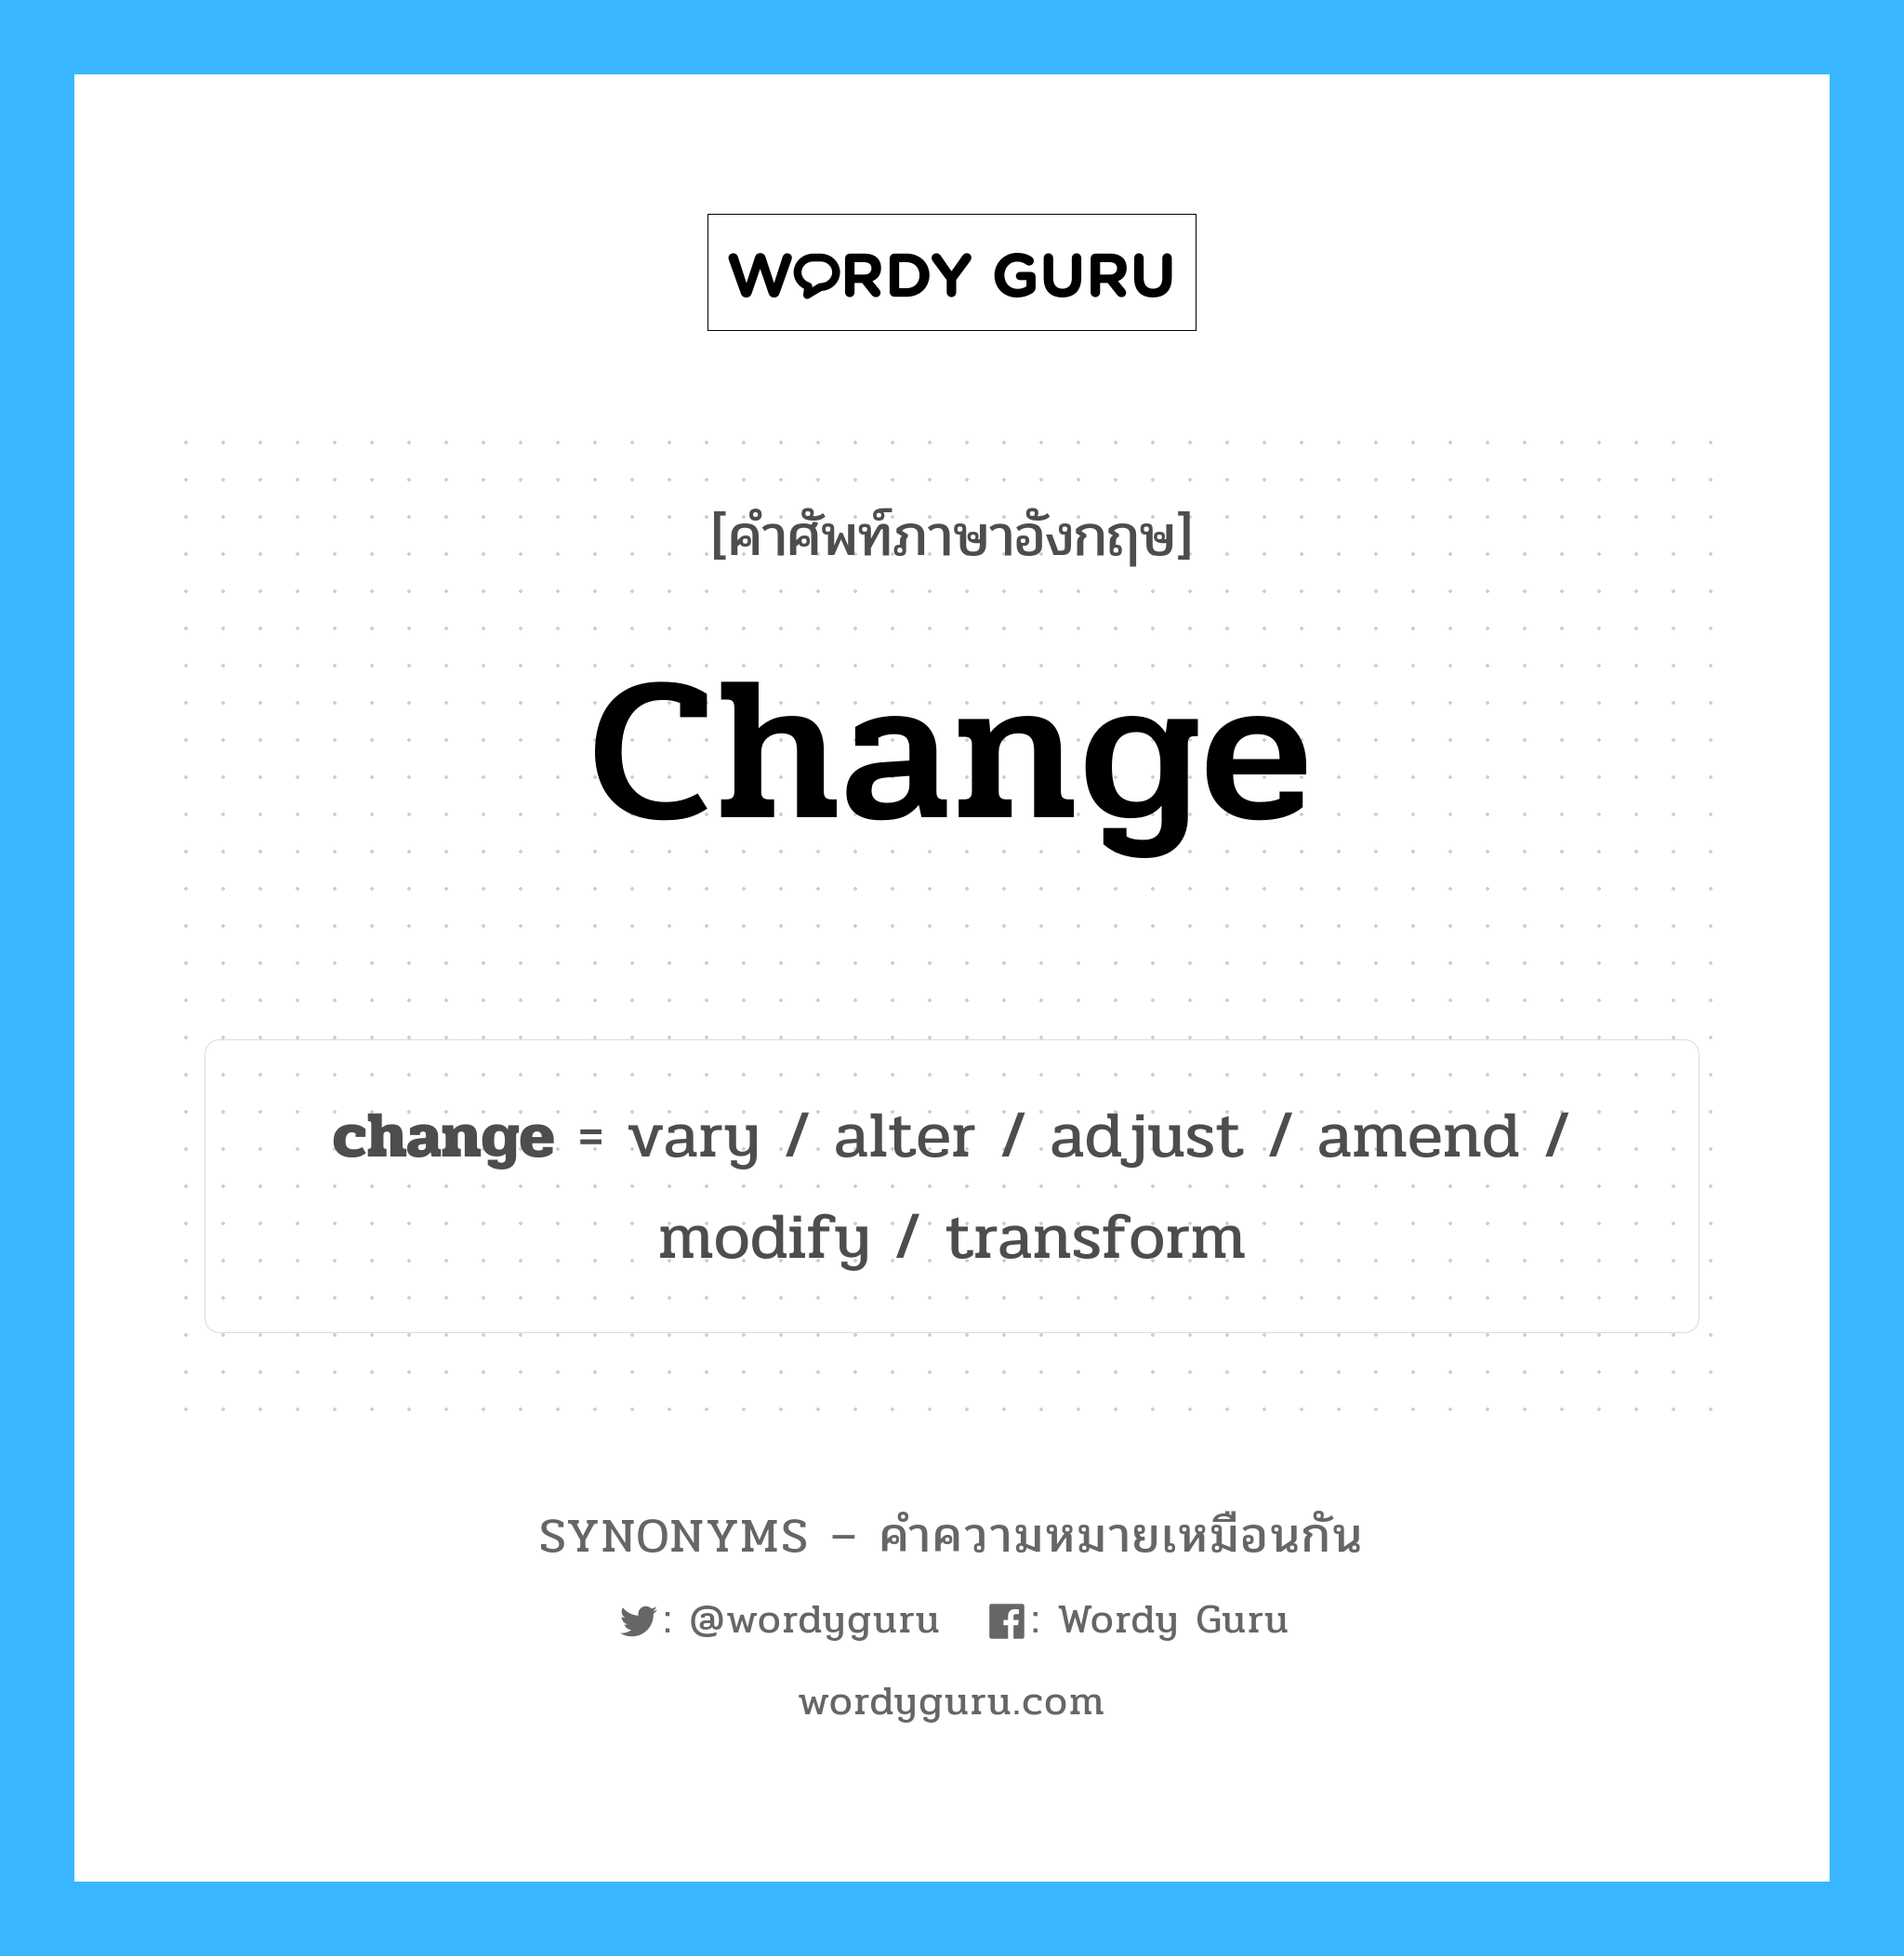 change เป็นหนึ่งใน adjust และมีคำอื่น ๆ อีกดังนี้, คำศัพท์ภาษาอังกฤษ change ความหมายคล้ายกันกับ adjust แปลว่า ปรับ หมวด adjust